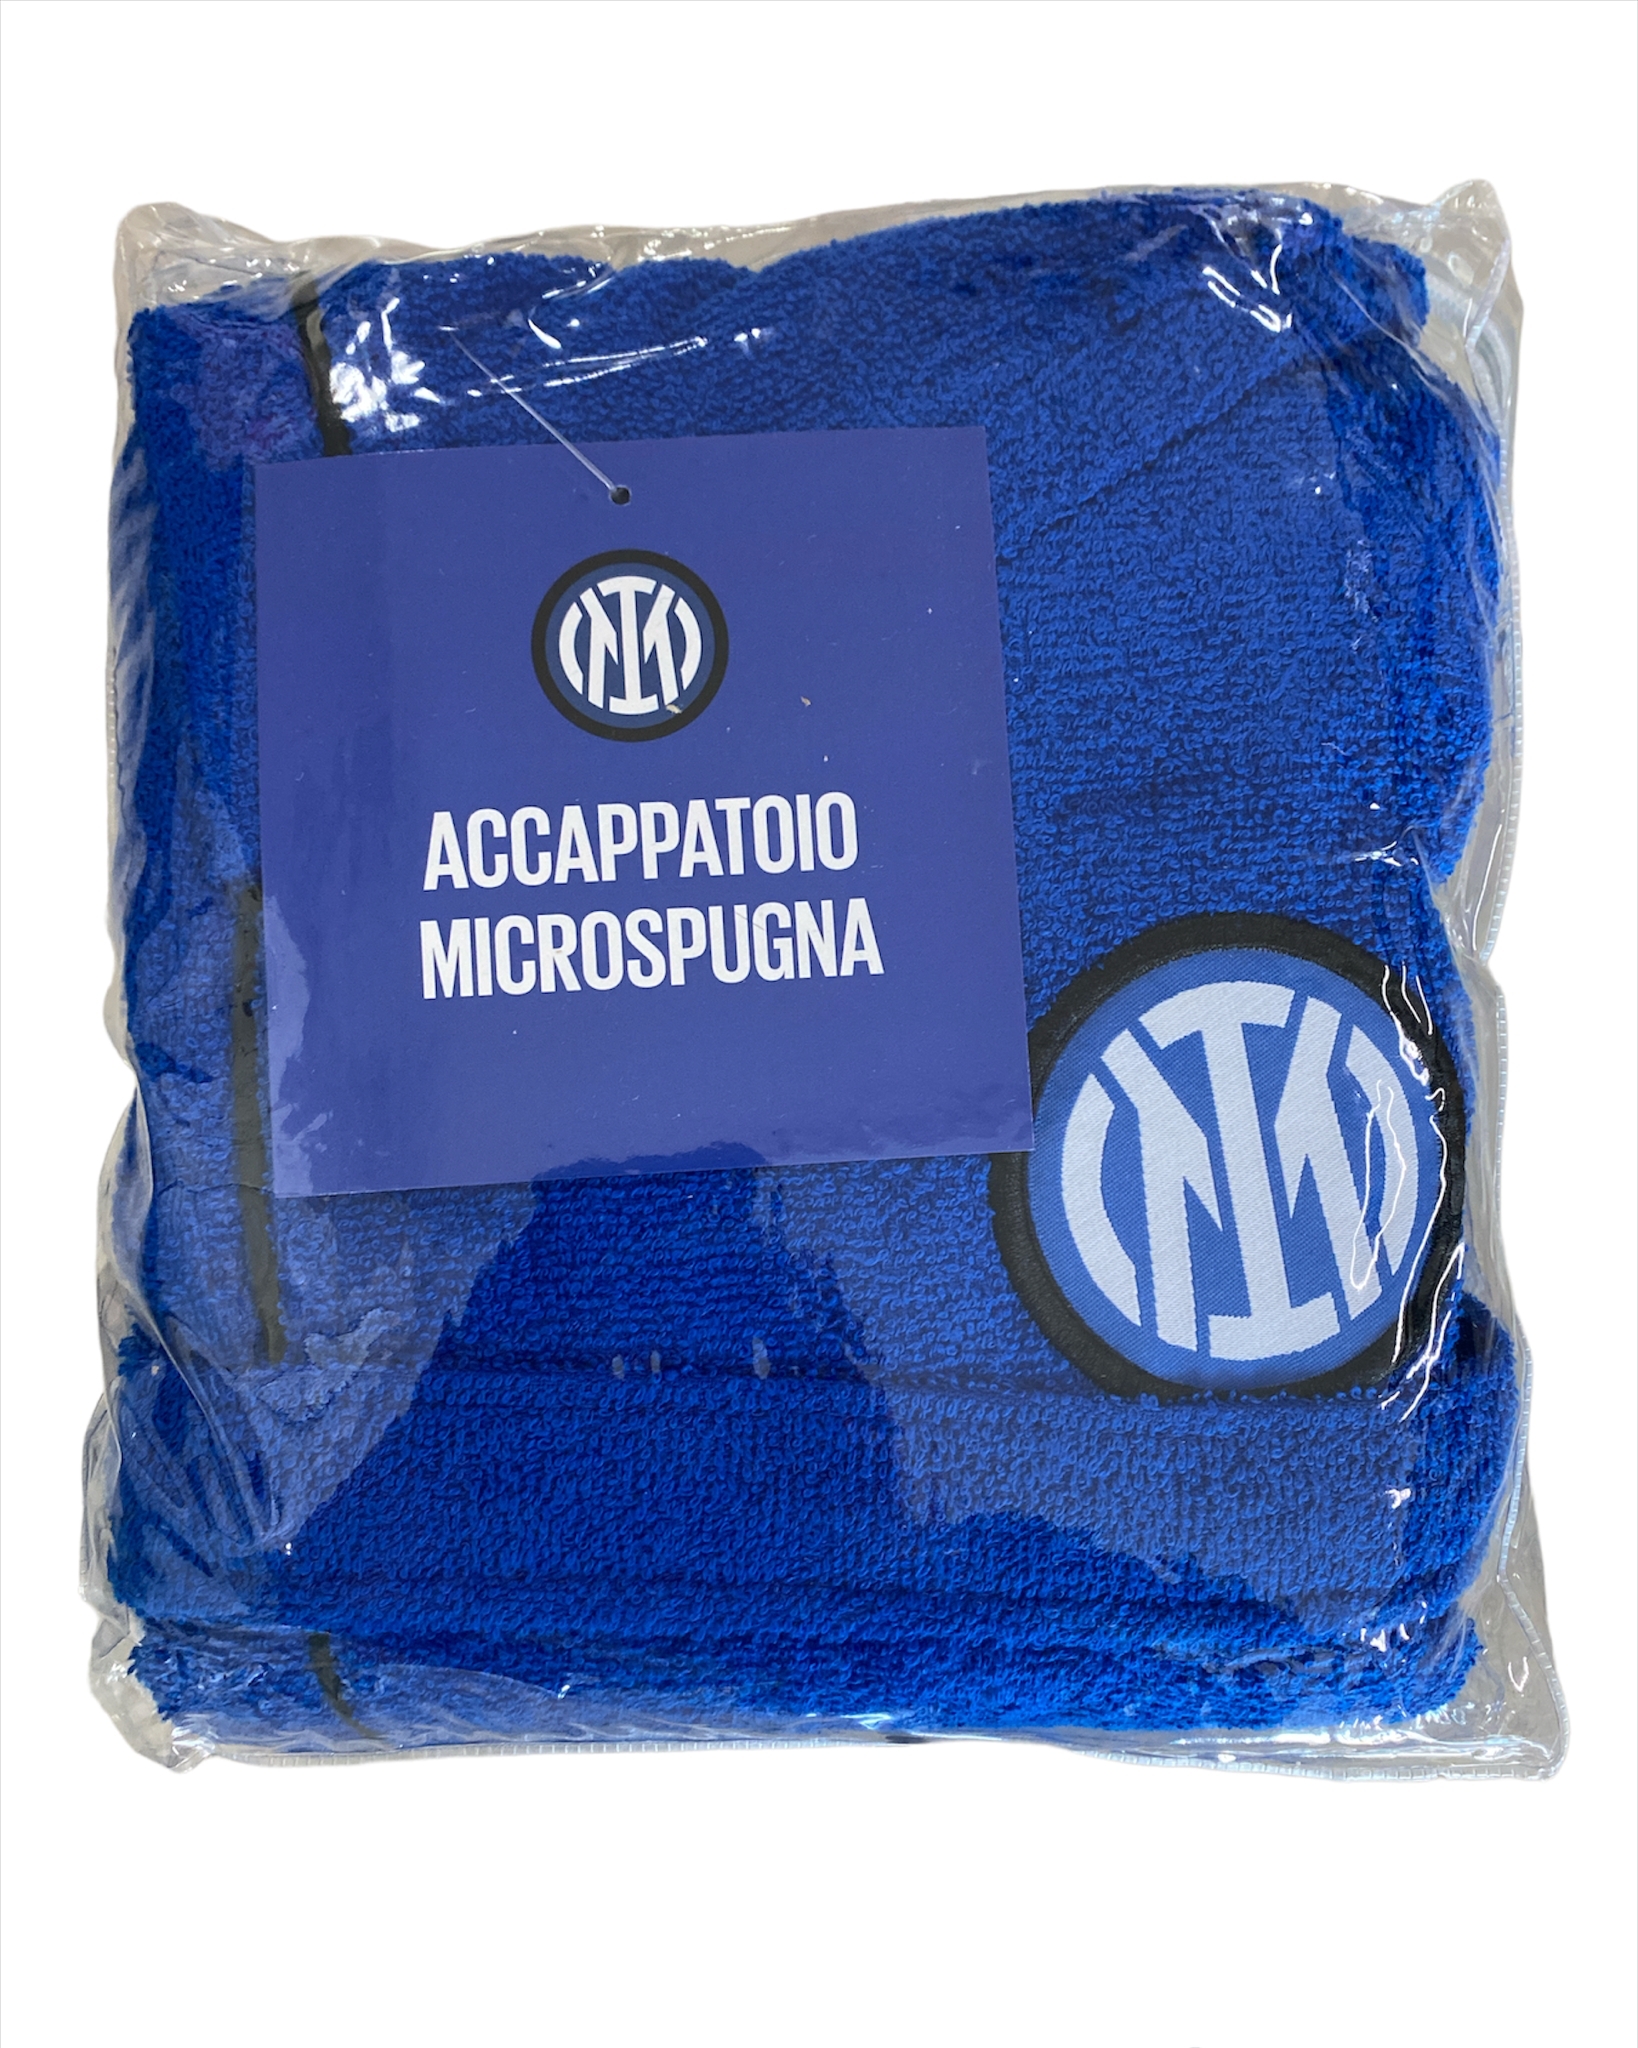 Accappatoio Uomo In Microspugna 100% Cotone Calcio F.C. Inter